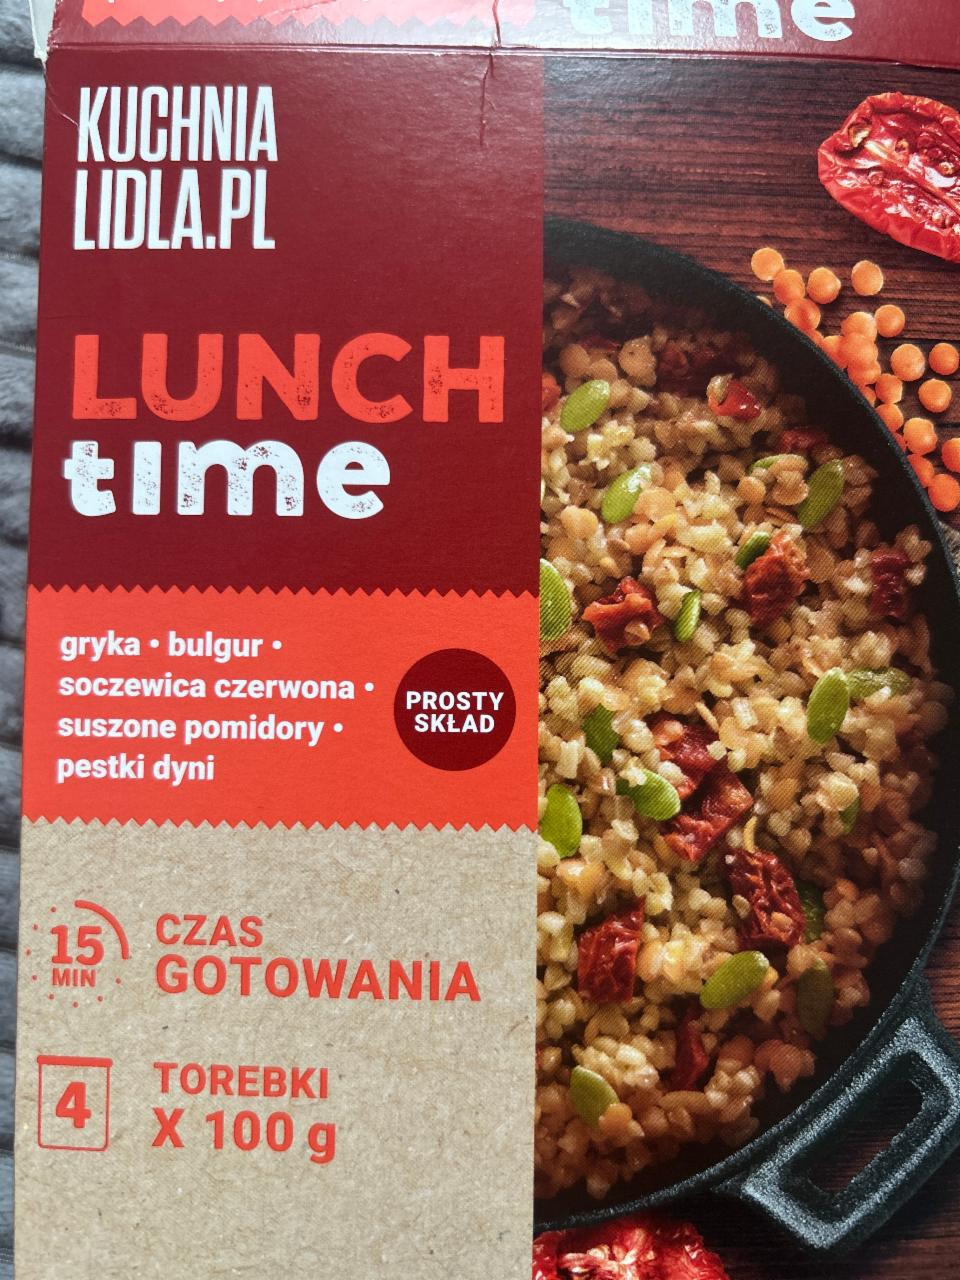 Zdjęcia - Lunch time gryka-bulgur-soczewica czerwona-suszone pomidory-pestki dyni Kuchnia Lidla.Pl